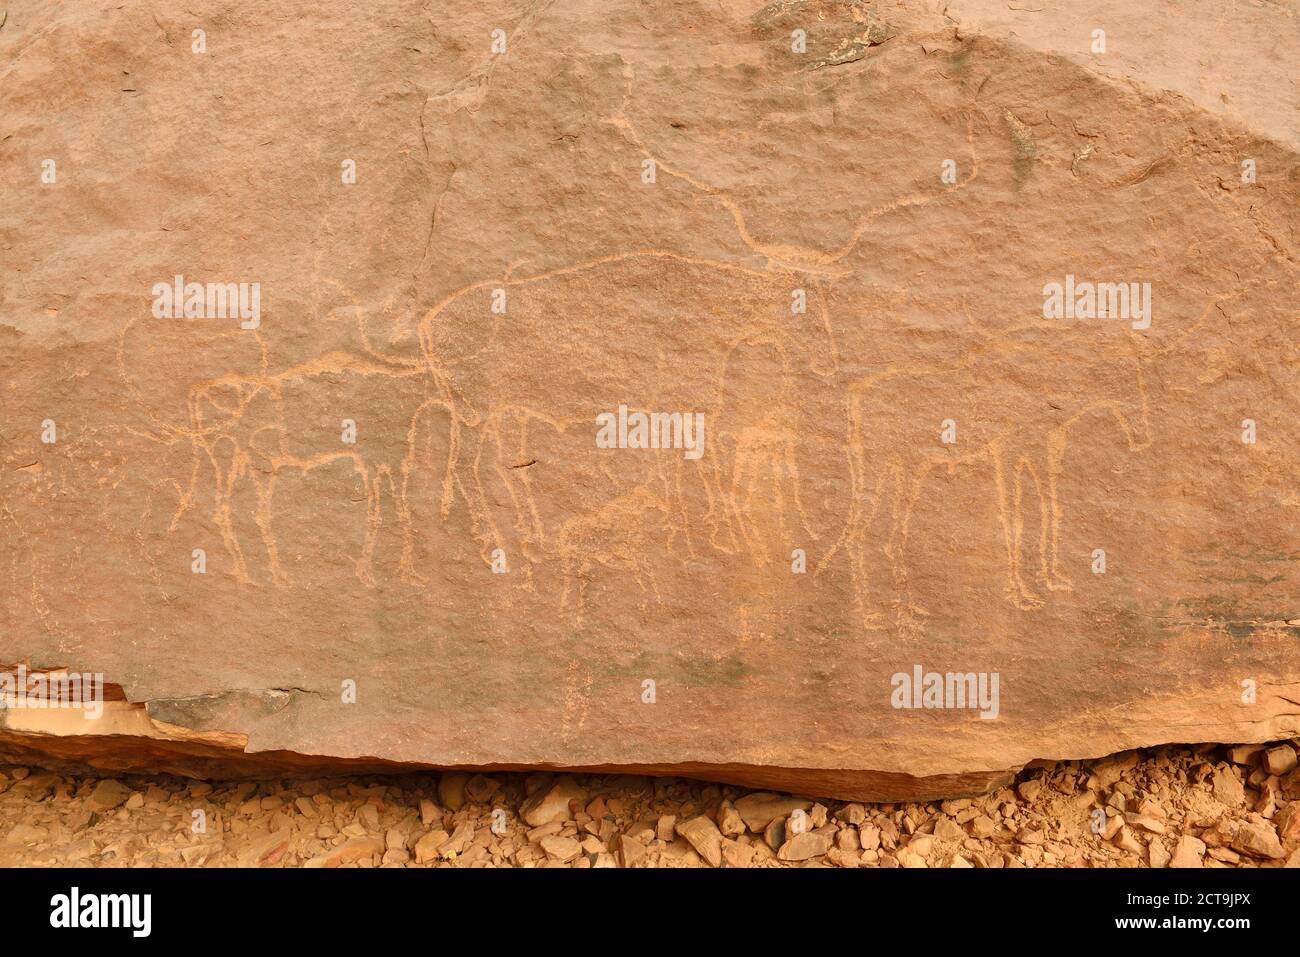 L'Afrique du Nord, Sahara, Algérie, Tassili N'Ajjer, Tadrart Parc national de région, l'art rupestre néolithique rock, gravure d'un bull Banque D'Images